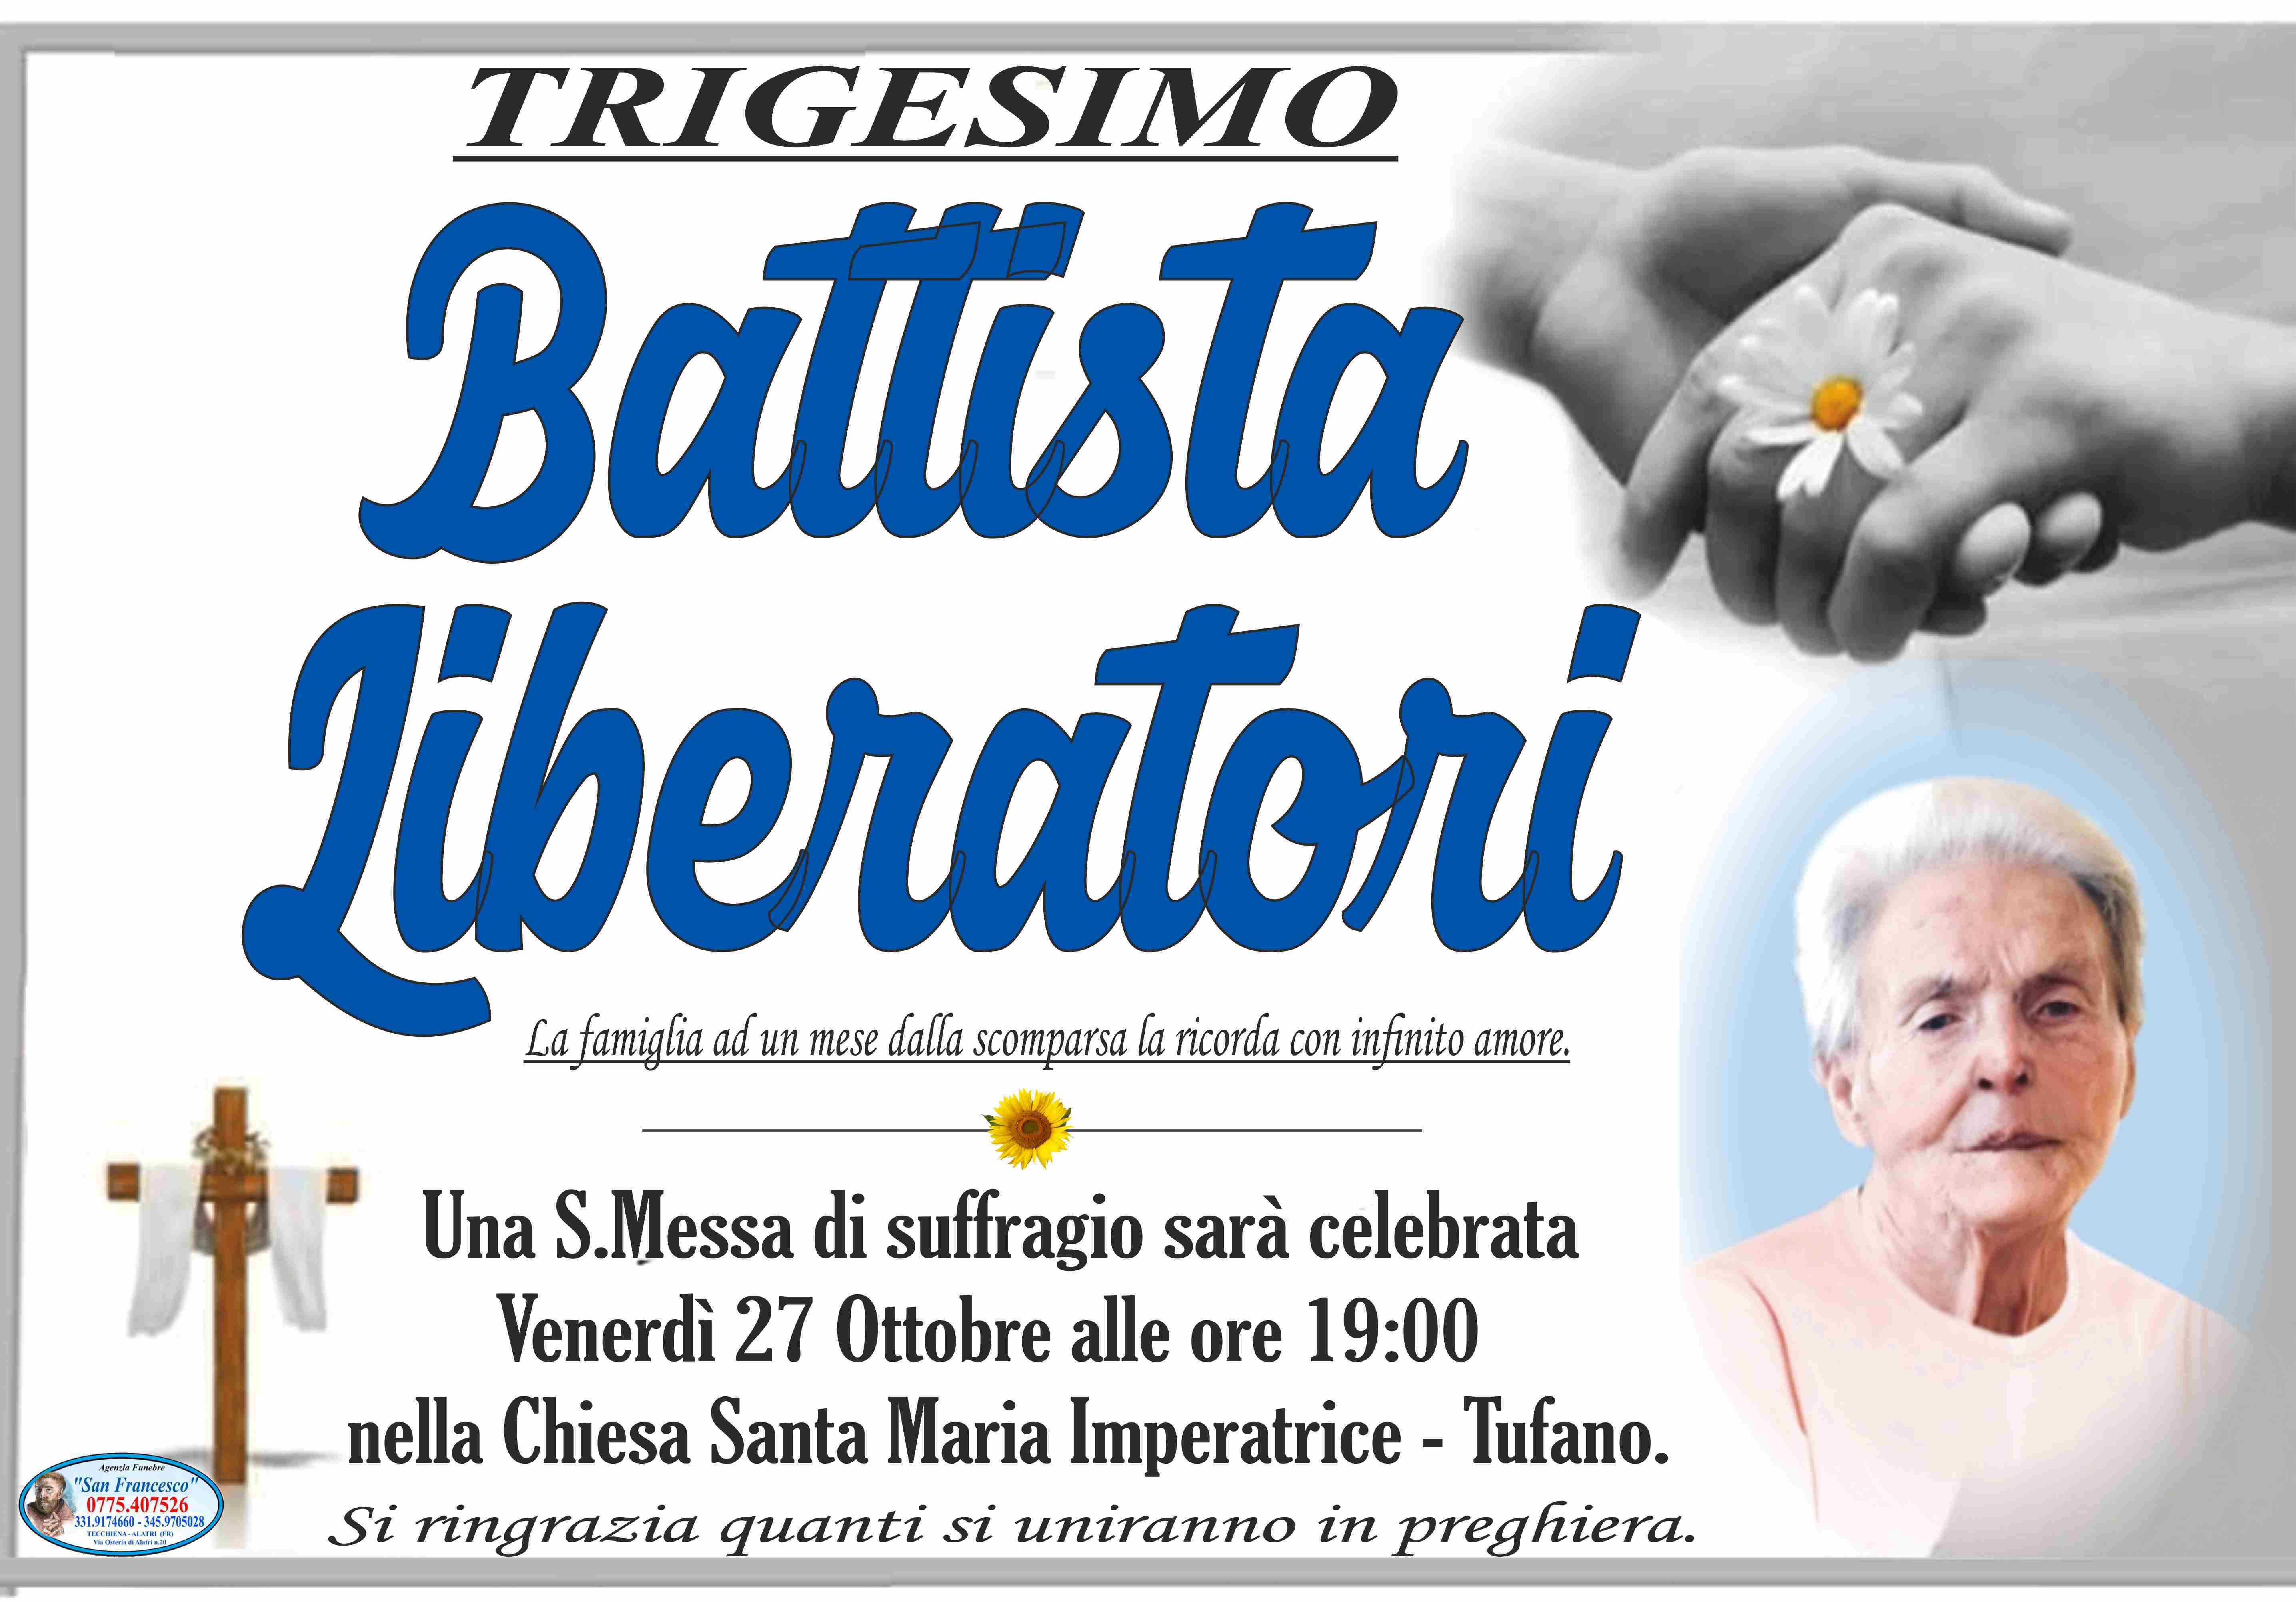 Battista Liberatori